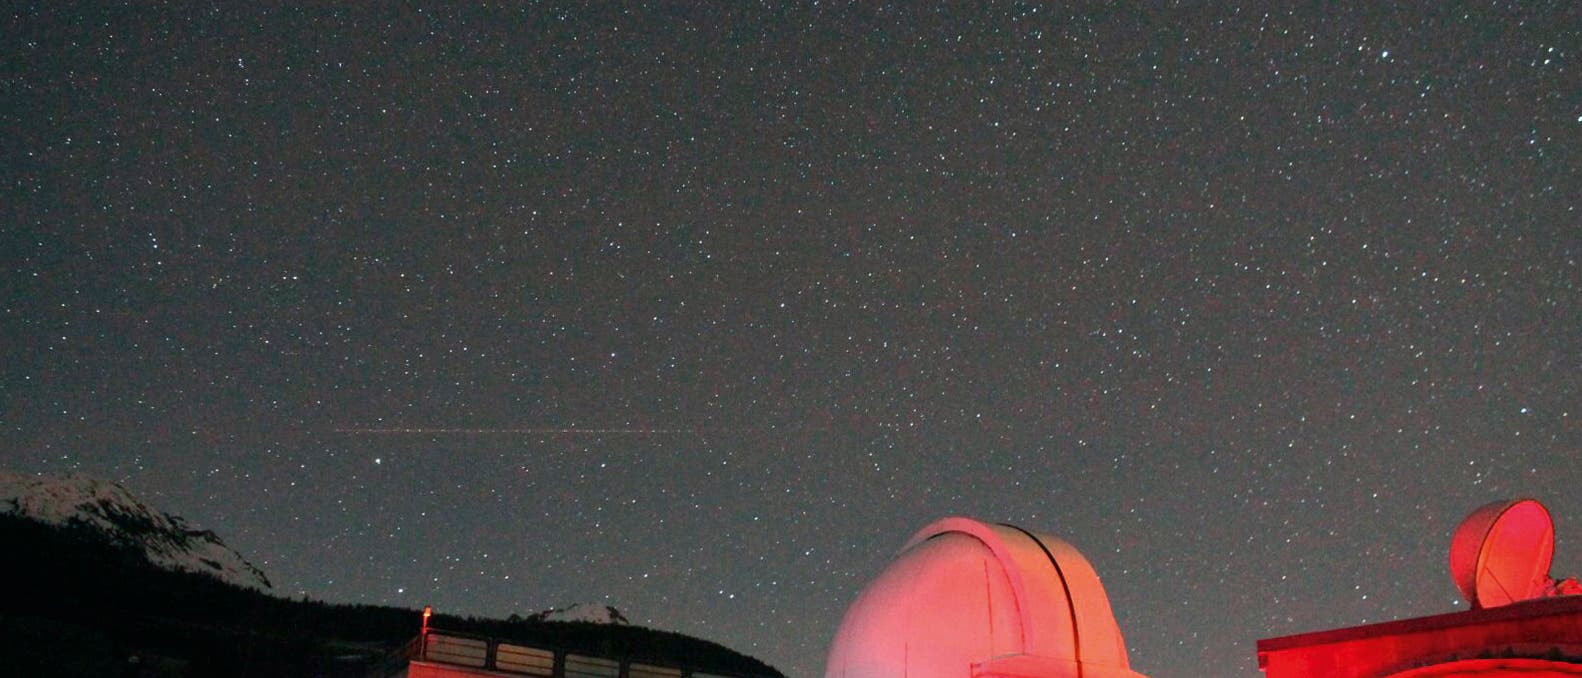 Auf der Beobachtungsplattform des "Osservatorio Astronomico della Regione Autonoma Valle d’Aosta" OAVdA im Aosta-Tal standen des Nachts mehrere Zehn-Zoll-Teleskope für die Beobachtung von Himmelsobjekten bereit.